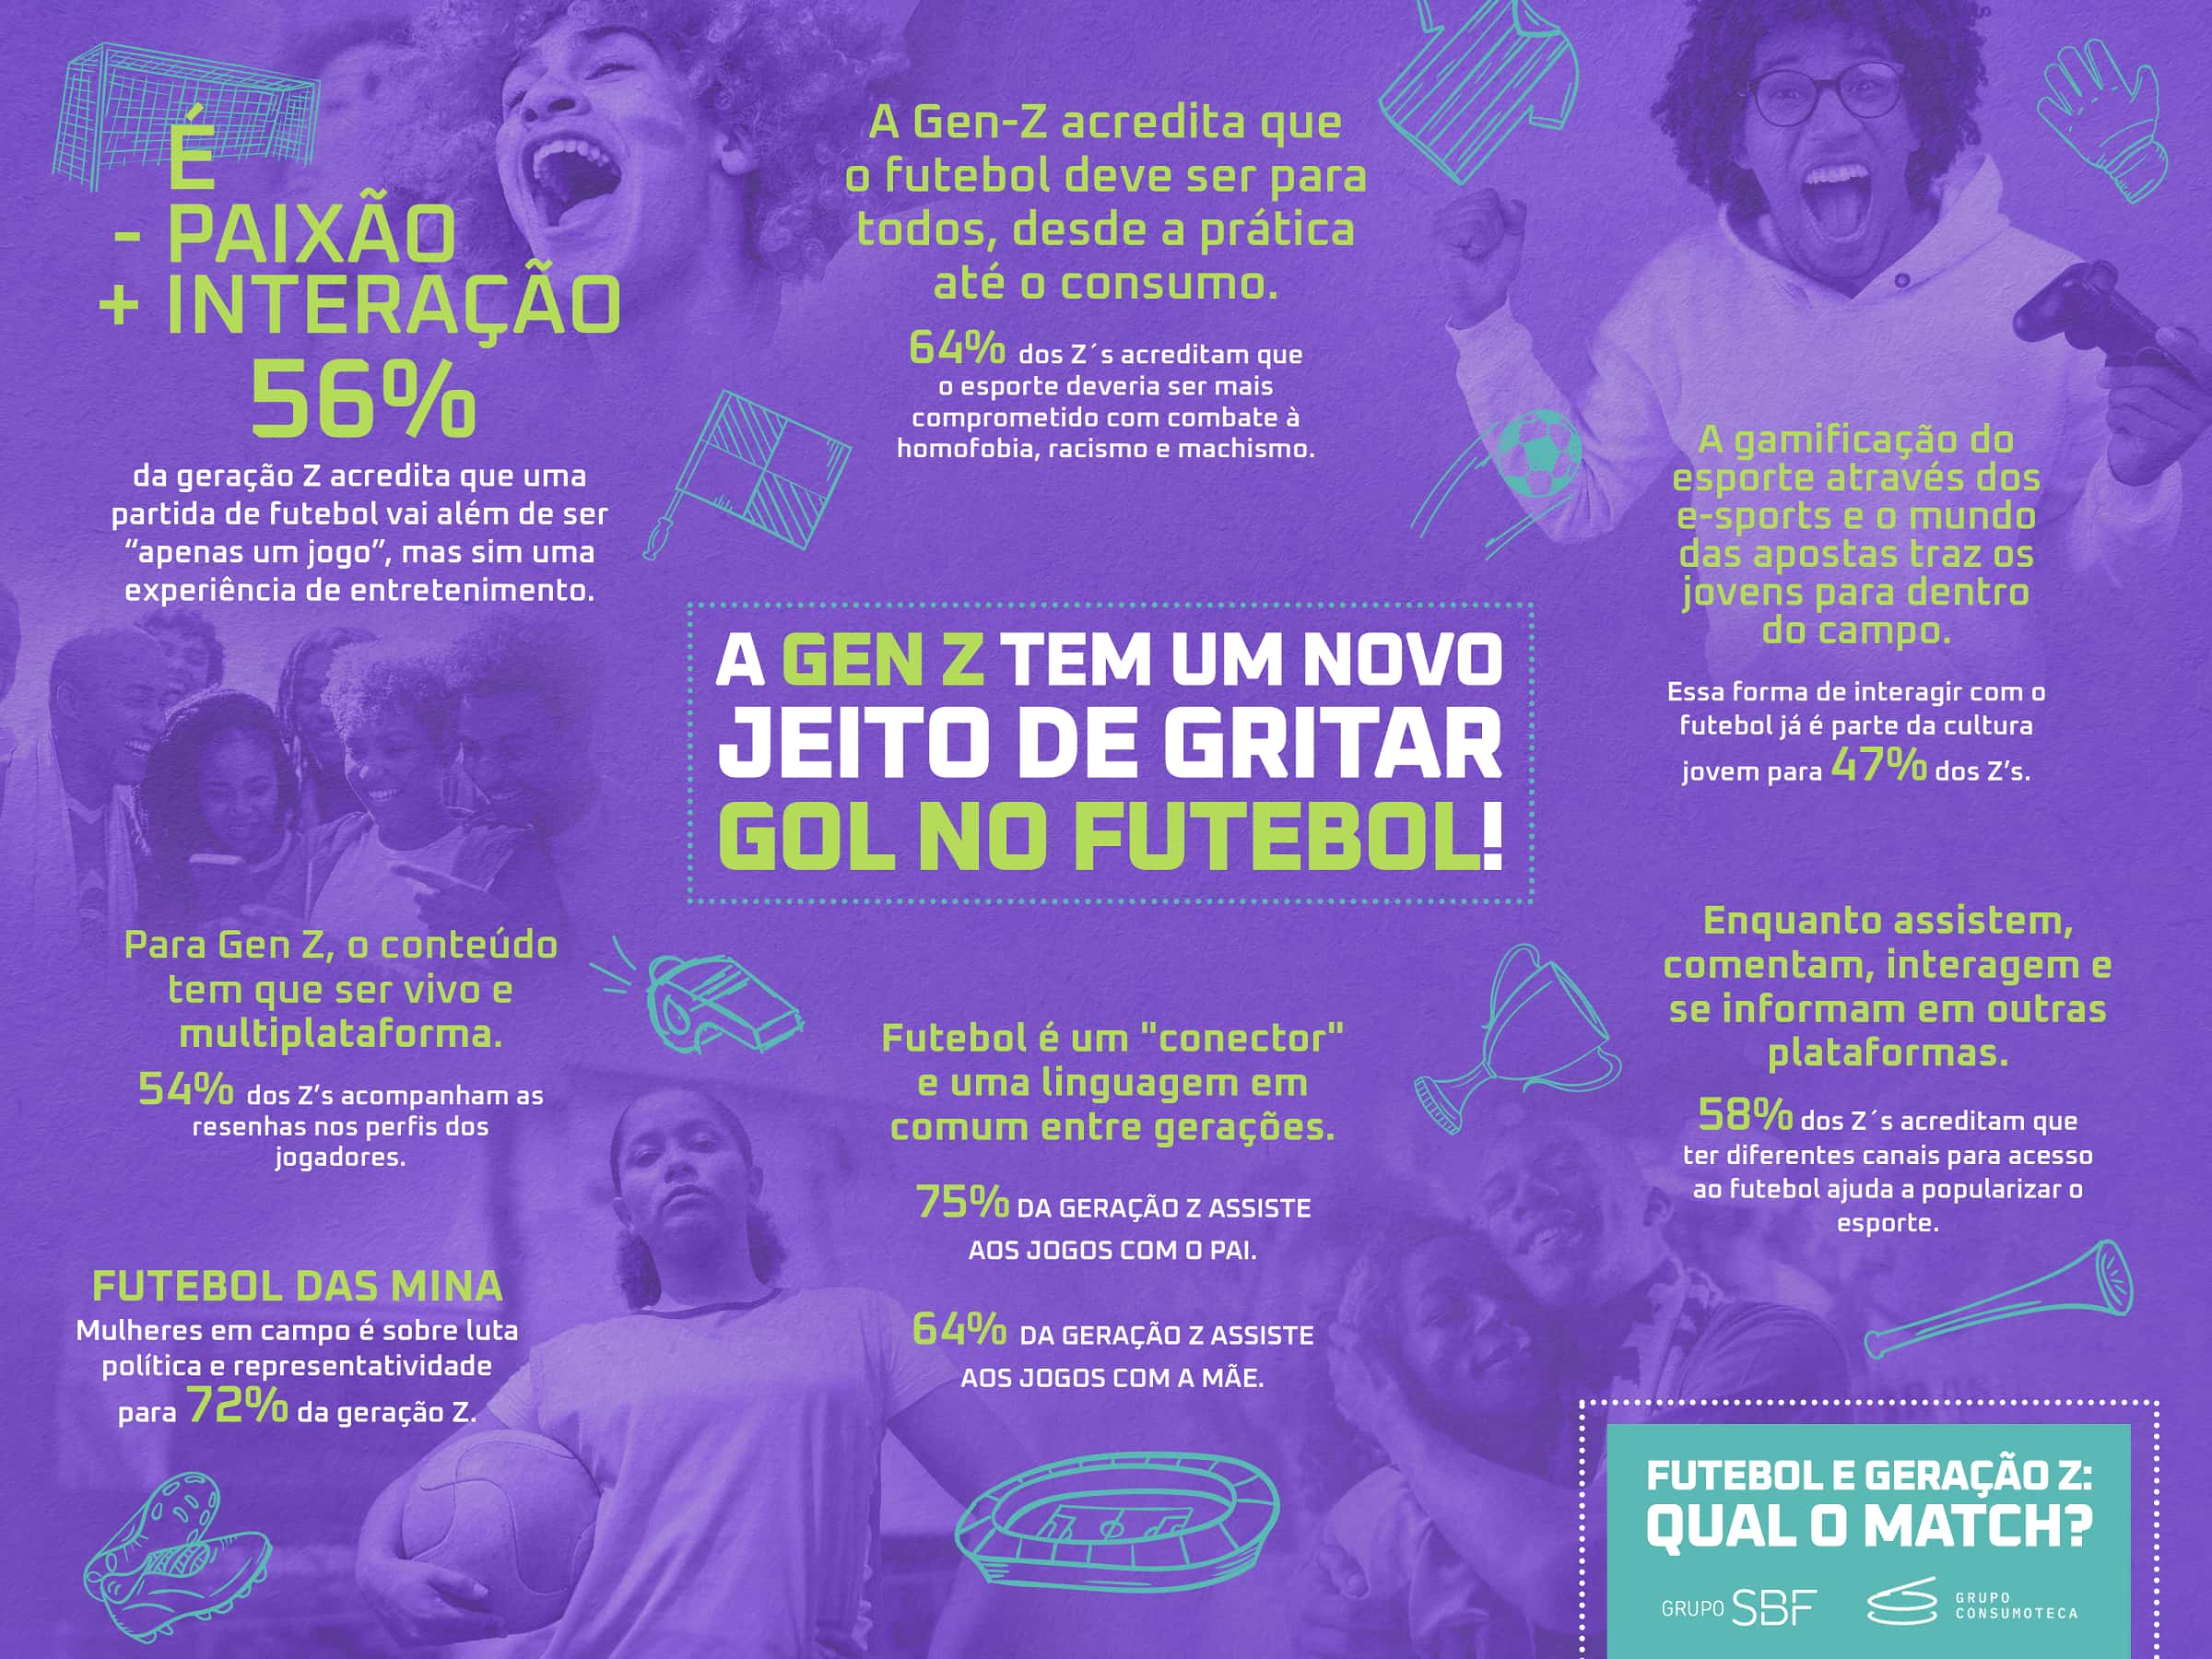 76% dos brasileiros vão assistir aos jogos da Copa em casa, aponta pesquisa  > Revista Destaque +